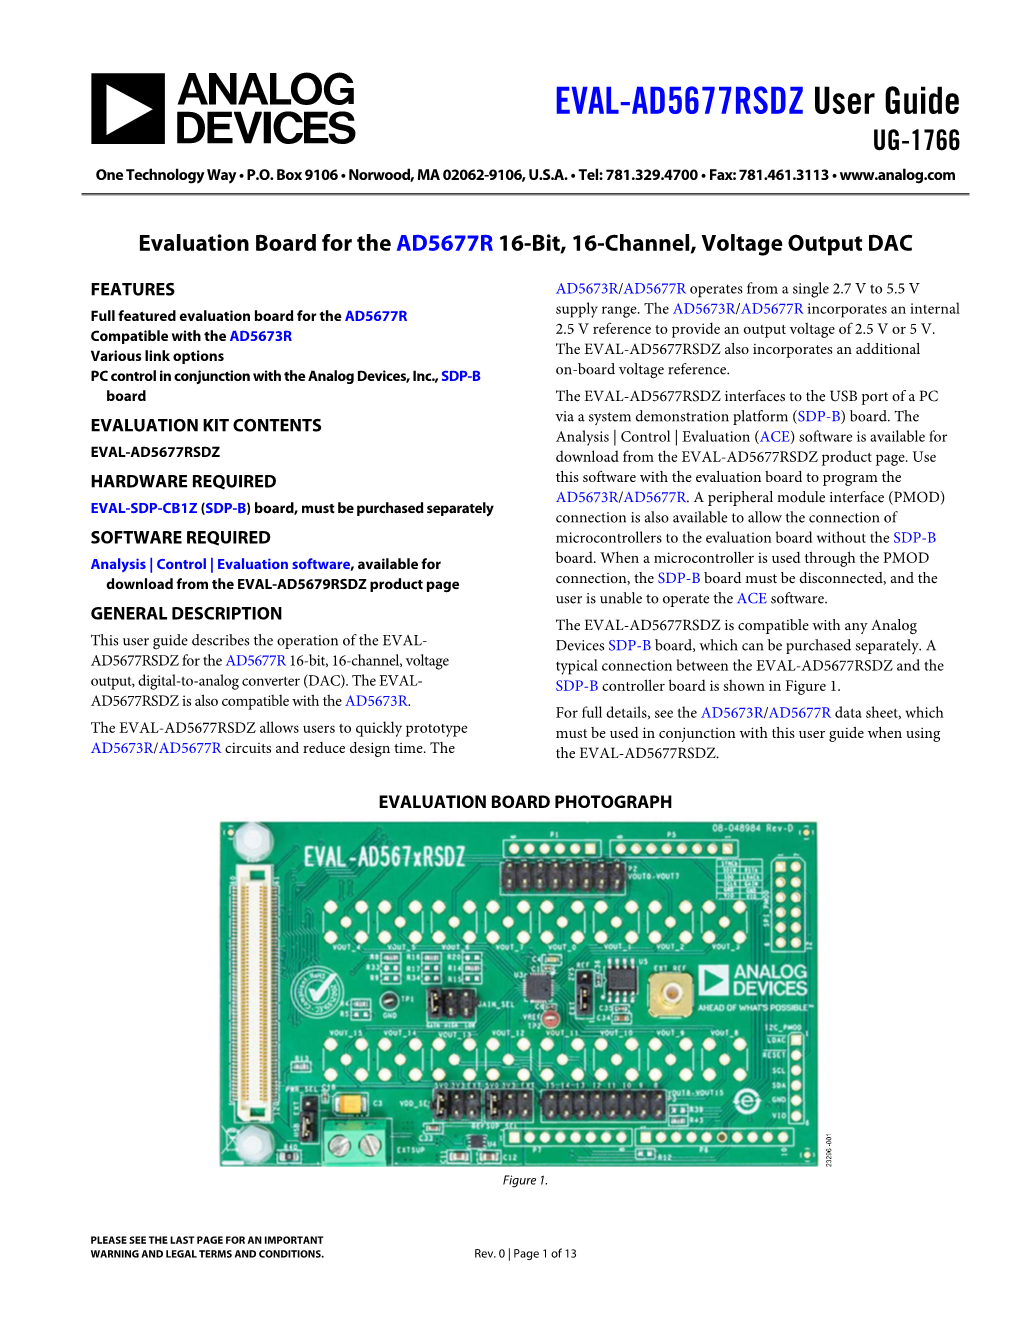 EVAL-AD5677RSDZ User Guide UG-1766 One Technology Way • P.O